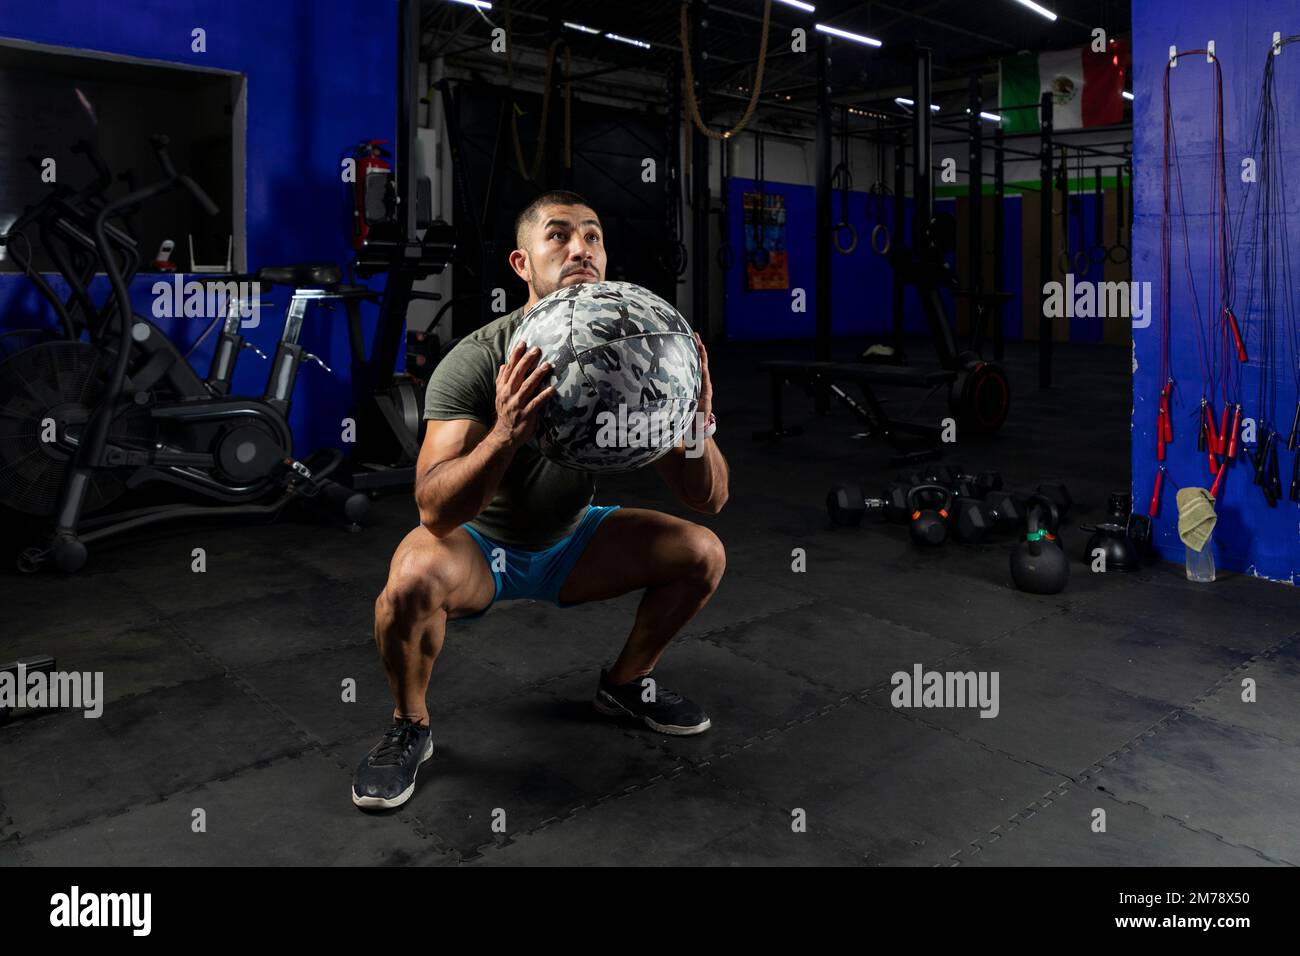 Mann in Sportbekleidung, der mit einem Crossfit-Medizinball trainiert, in einem Fitnessstudio Stockfoto